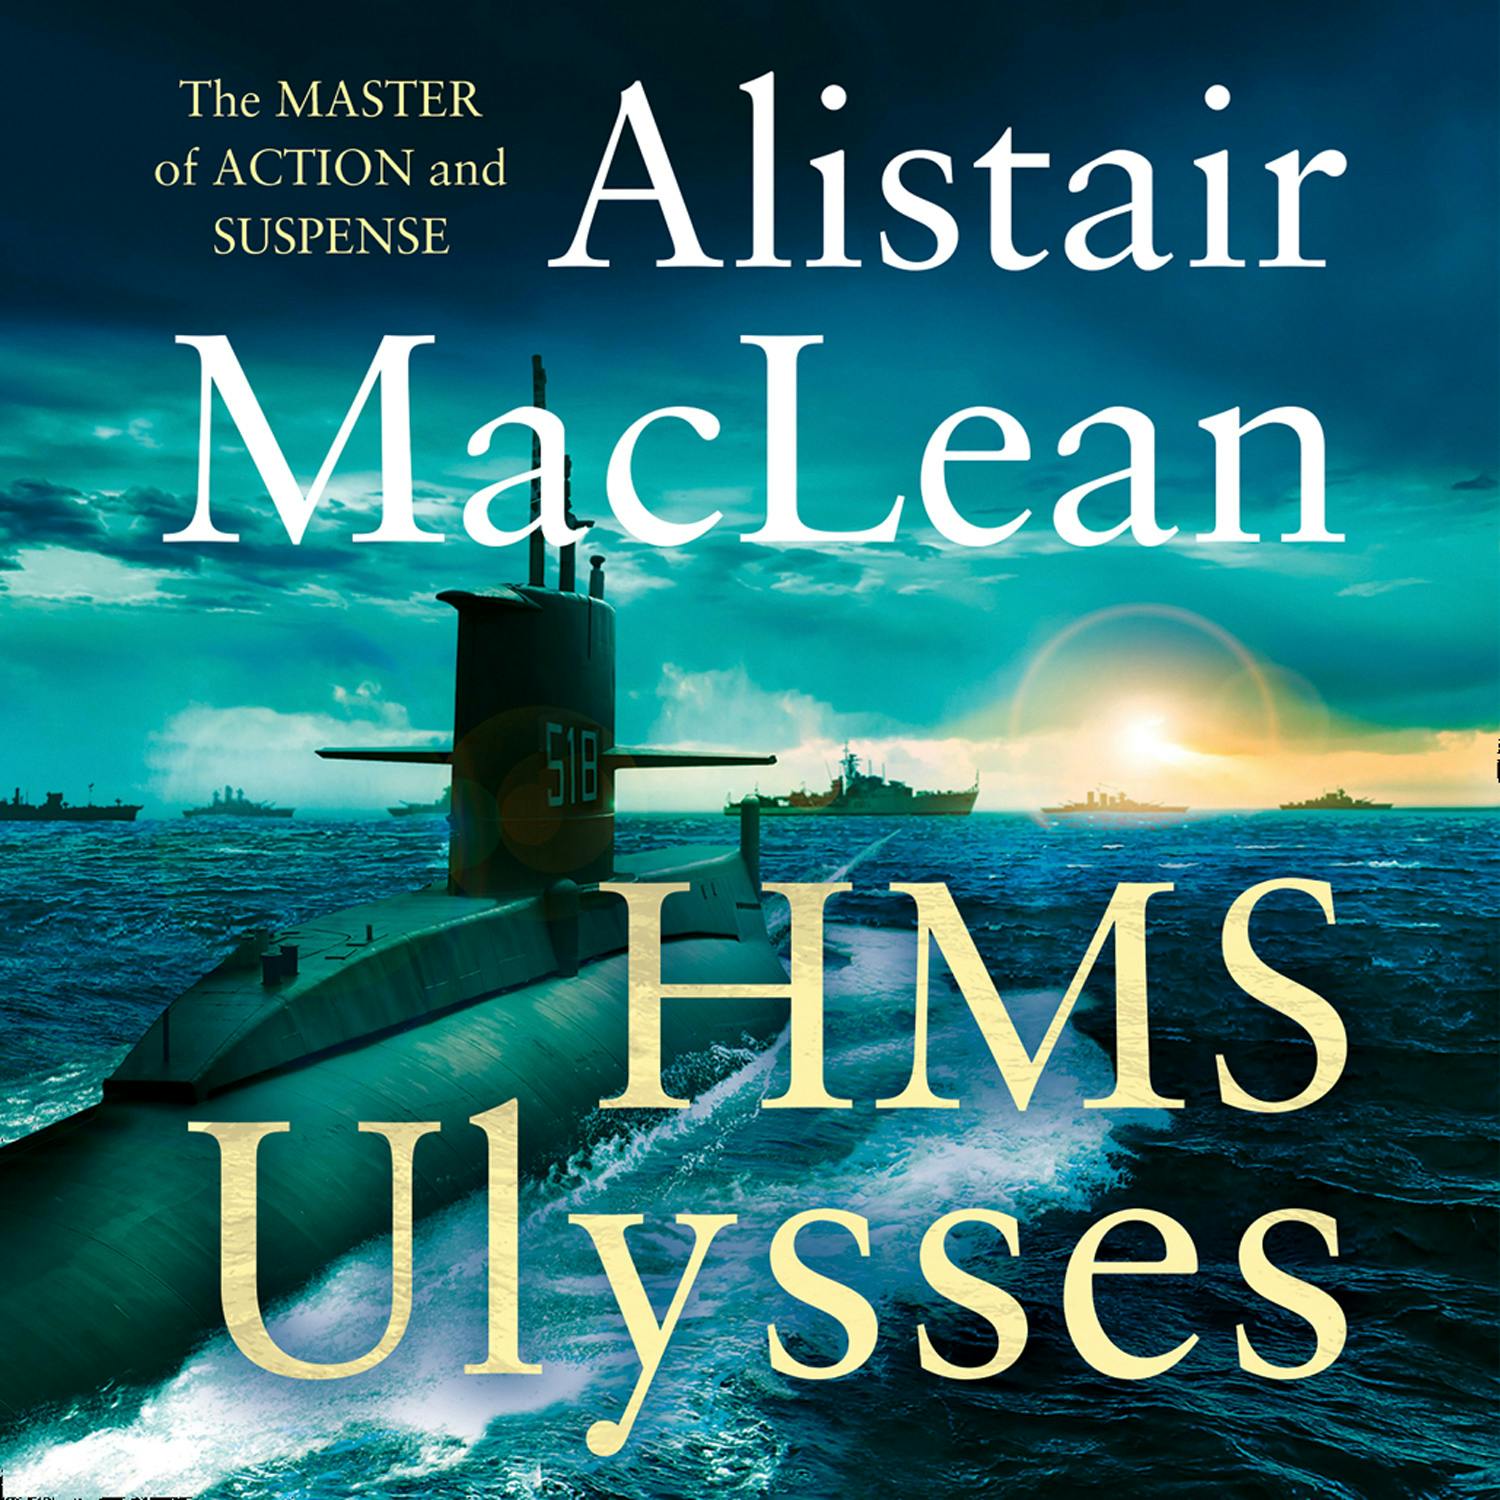 HMS Ulysses - Alistair MacLean